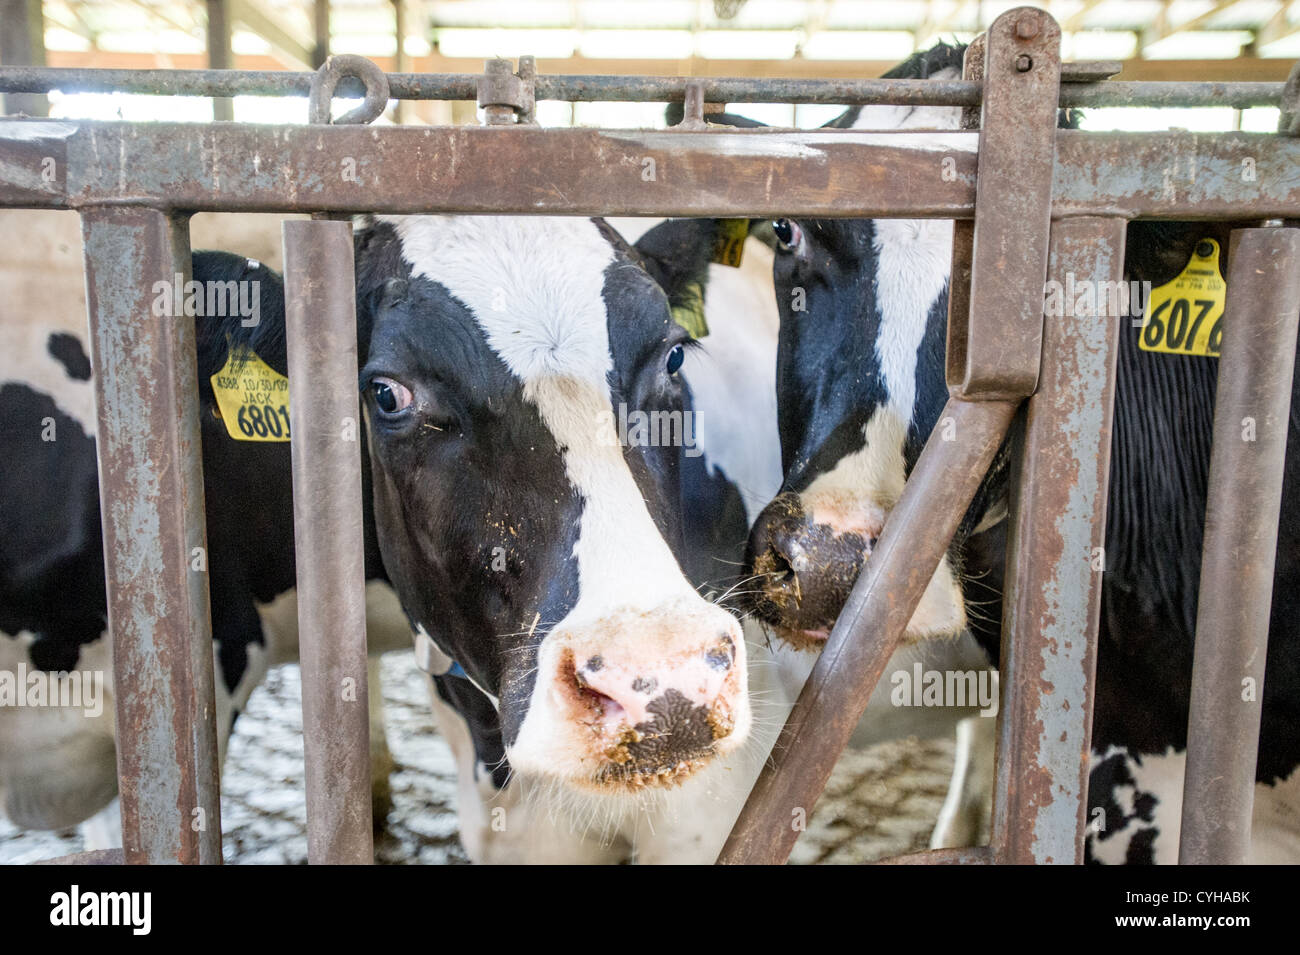 Vaches dans une étable à l'intérieur de grange Banque D'Images